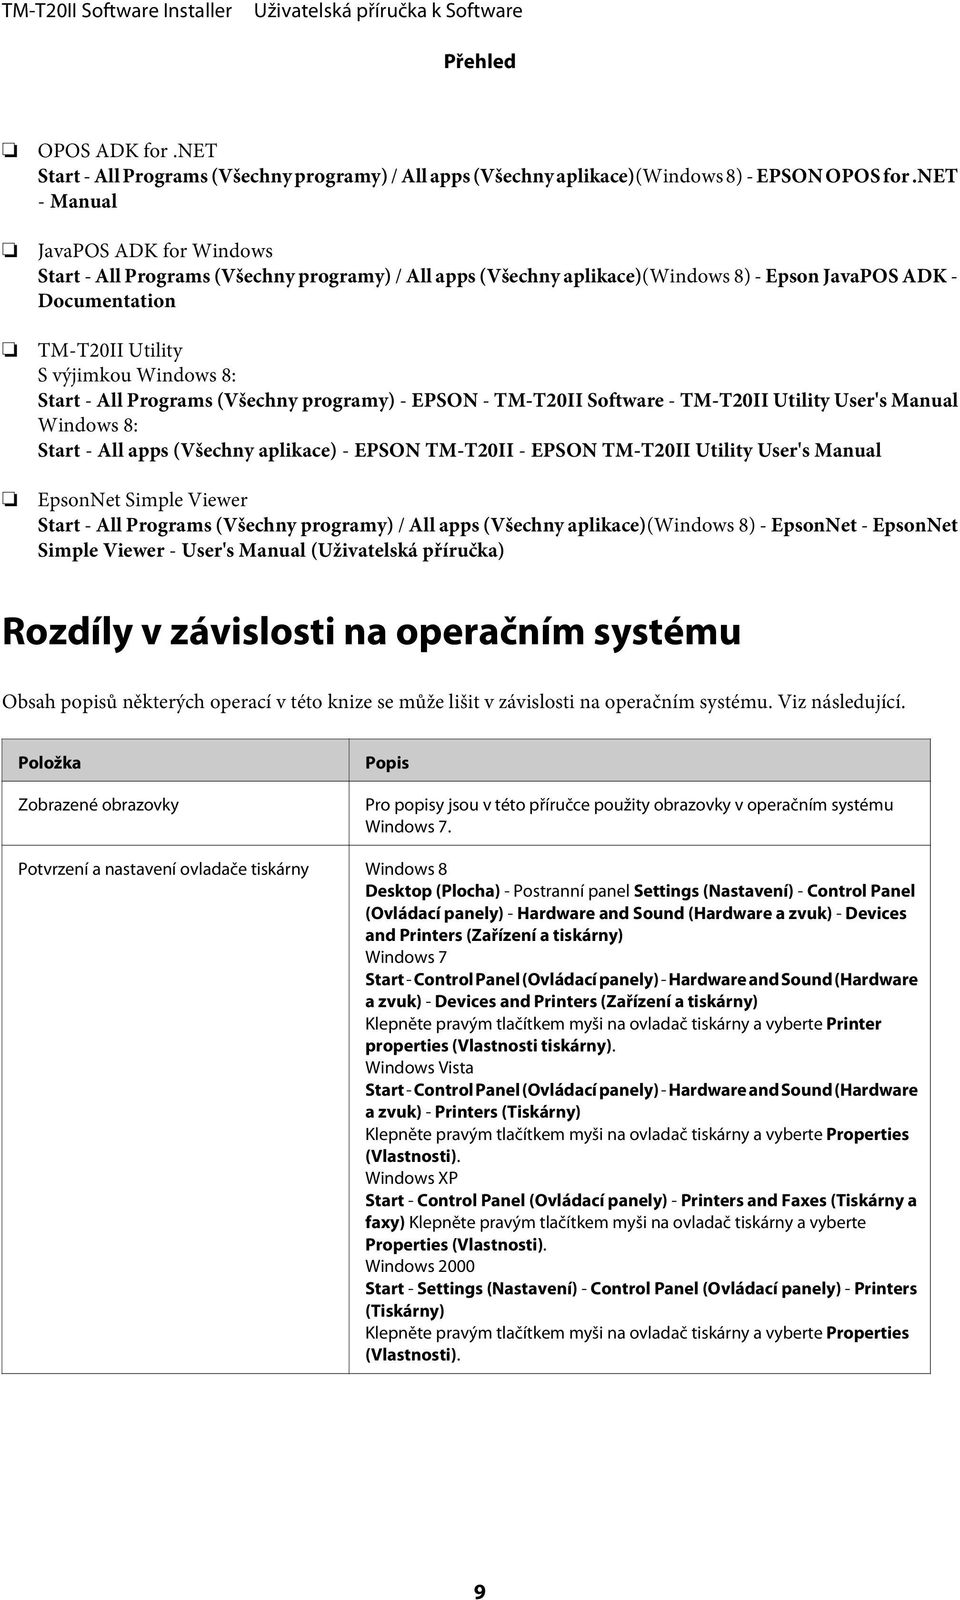 - All Programs (Všechny programy) - EPSON - TM-T20II Software - TM-T20II Utility User's Manual Windows 8: Start - All apps (Všechny aplikace) - EPSON TM-T20II - EPSON TM-T20II Utility User's Manual